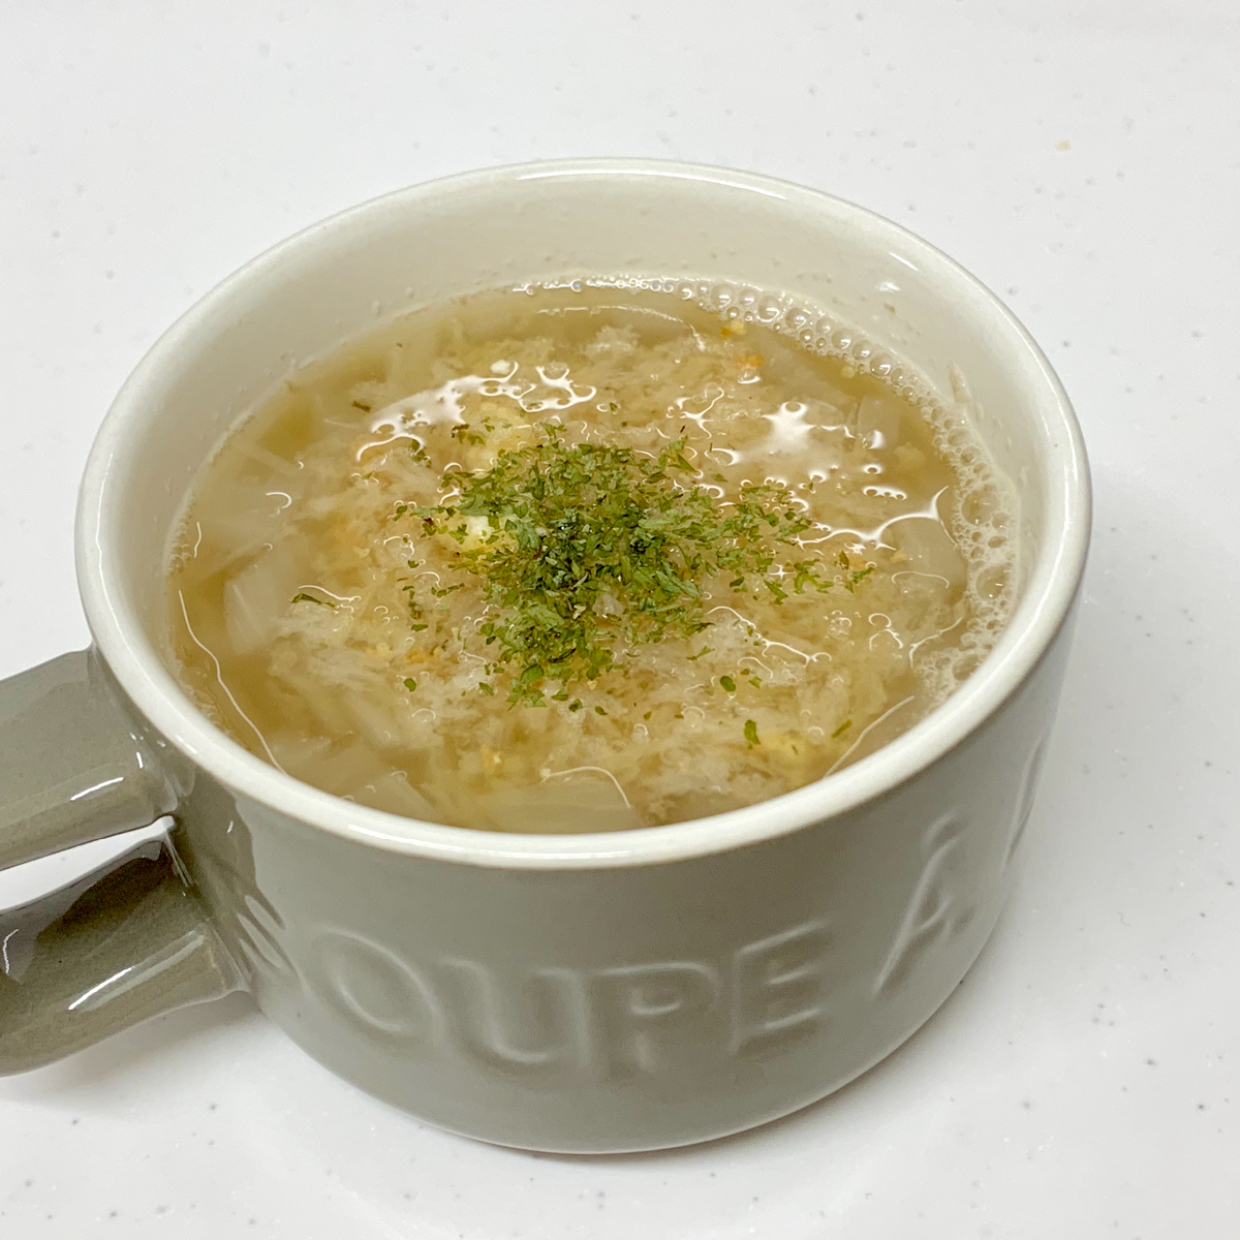  【北斗晶レシピ作ってみた！】チャチャッと5分で作れる「オニオングラタンスープ」がしみじみウマい 